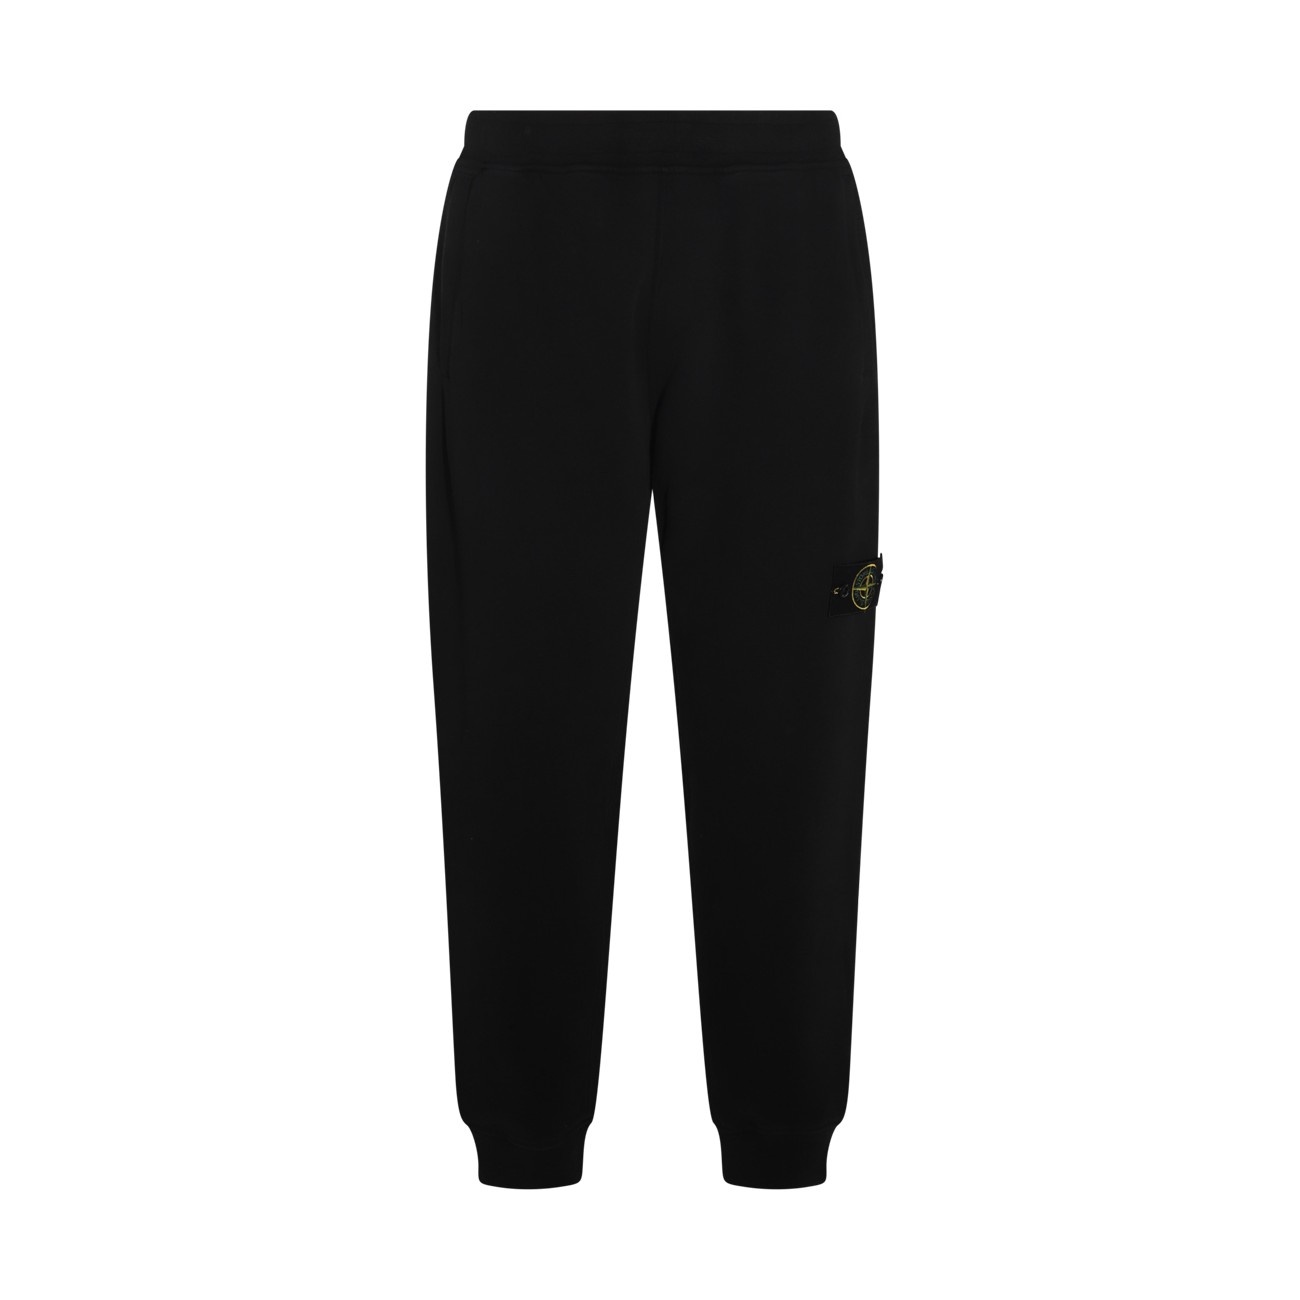 black cotton pants - 1